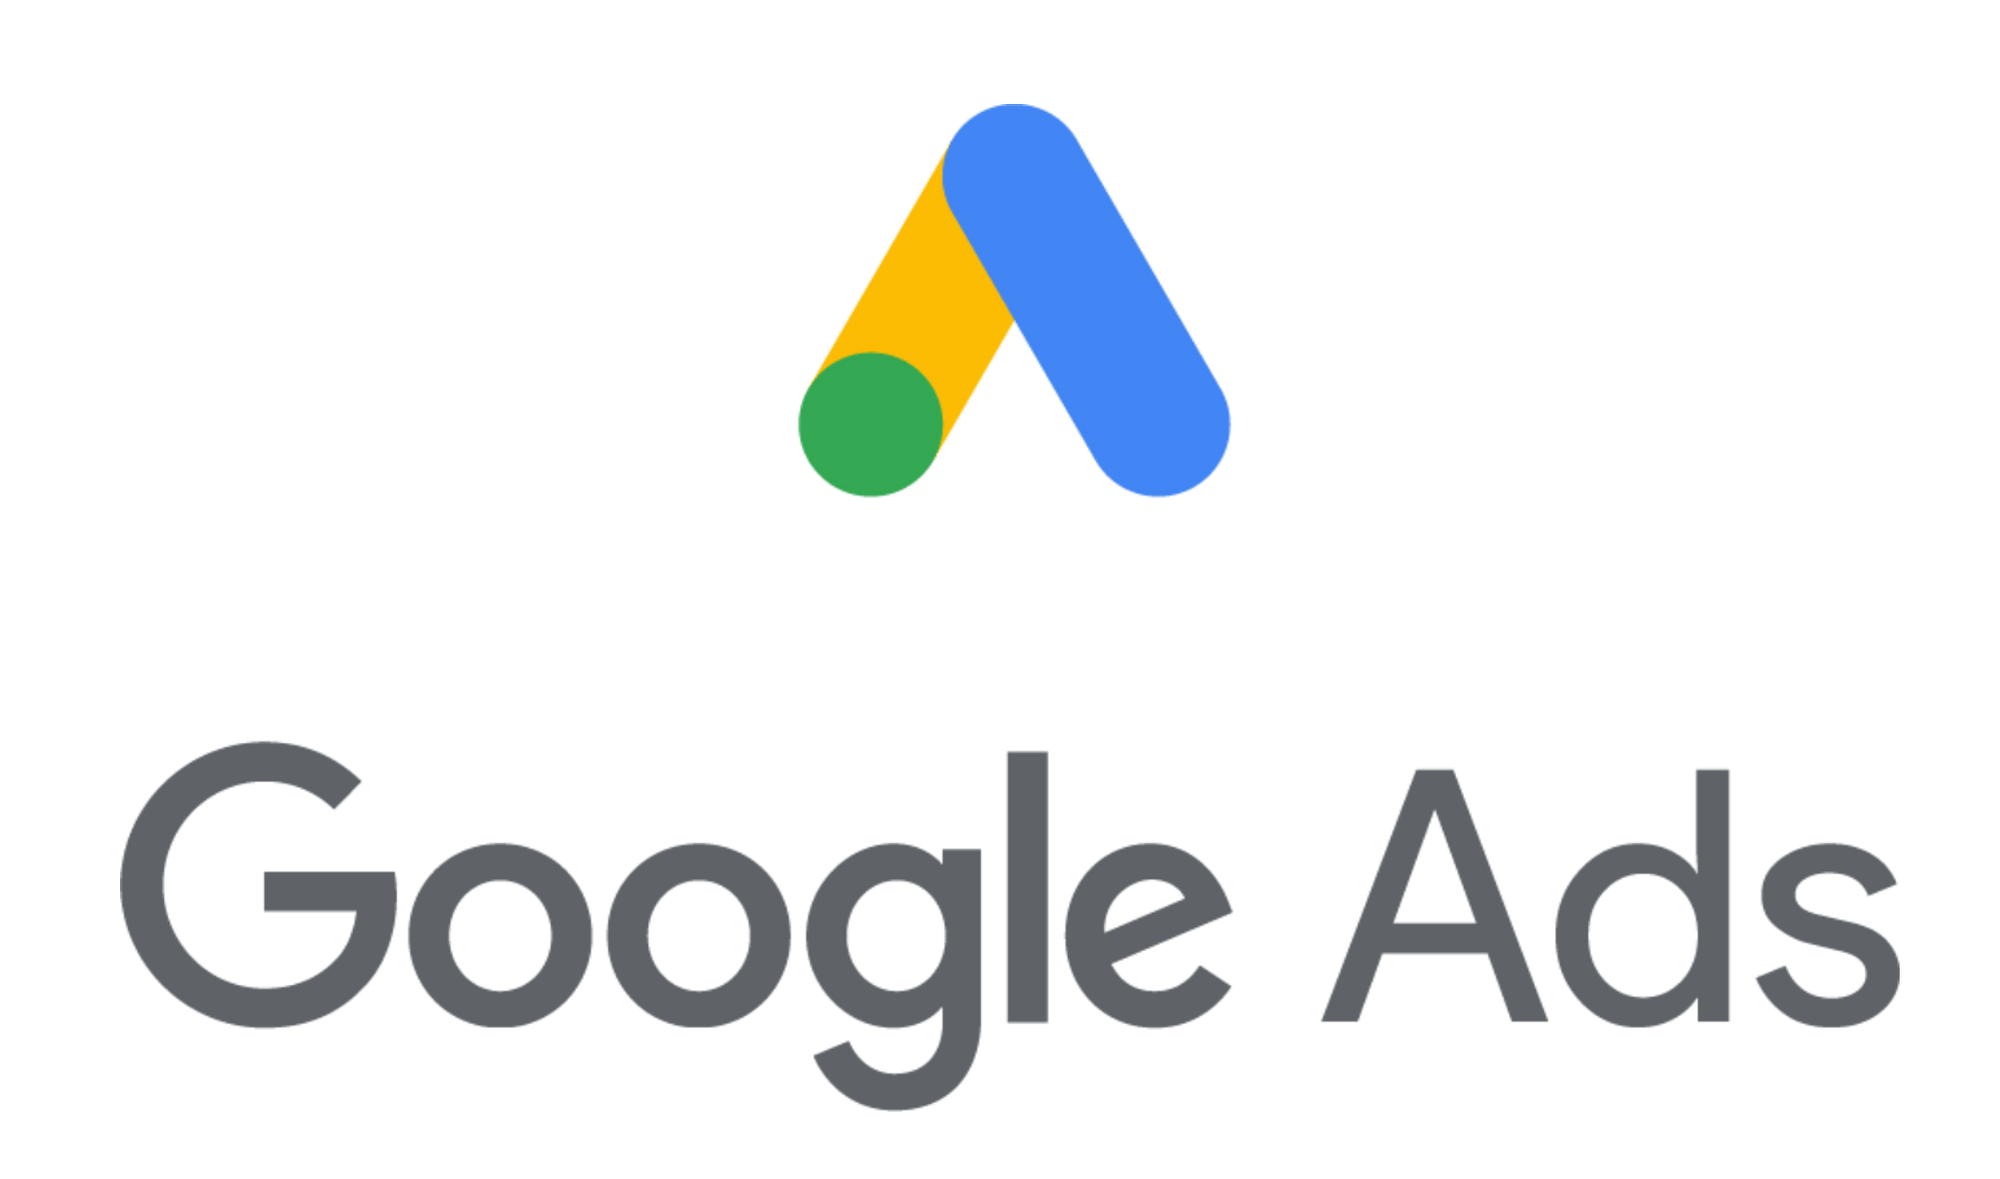 Wie funktioniert Google AdWords Werbung?